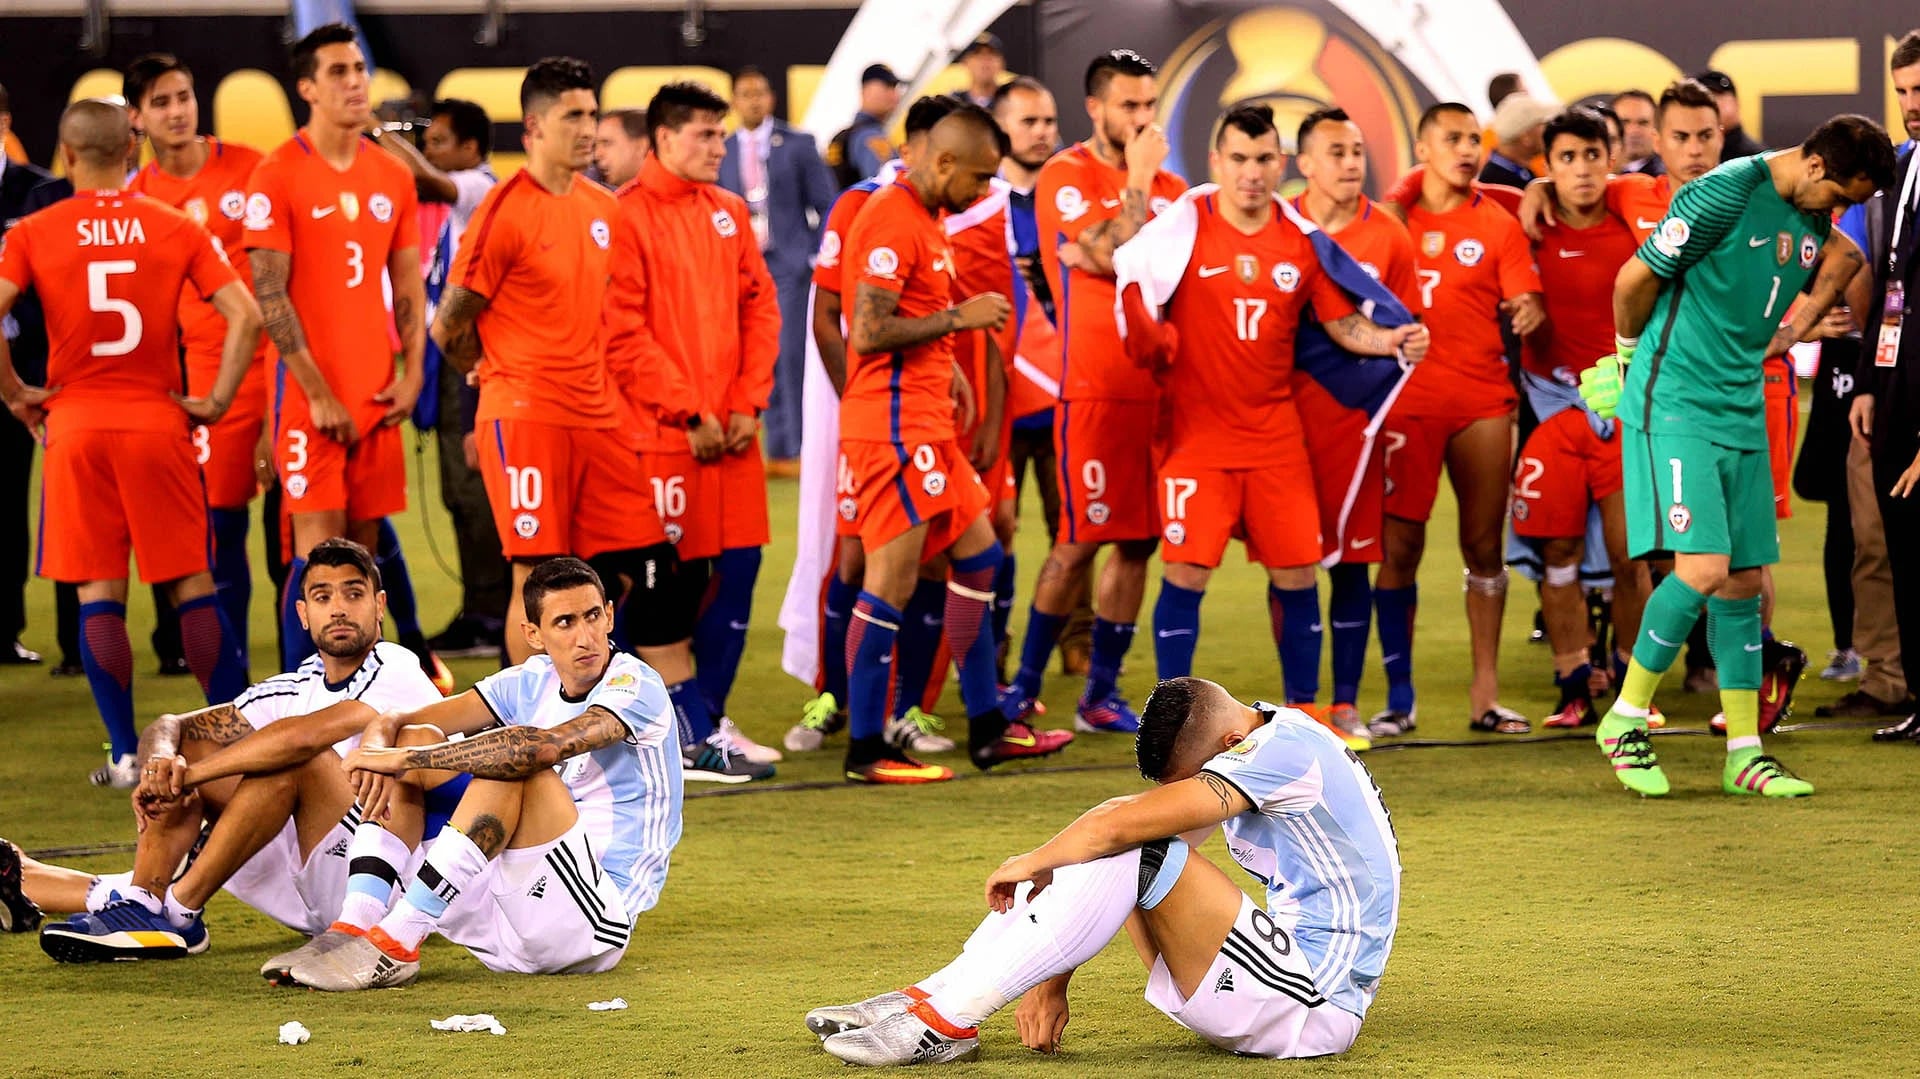 El seleccionado argentino, al igual que hace un año en Santiago, perdió por penales ante Chile 4-2 (Télam)